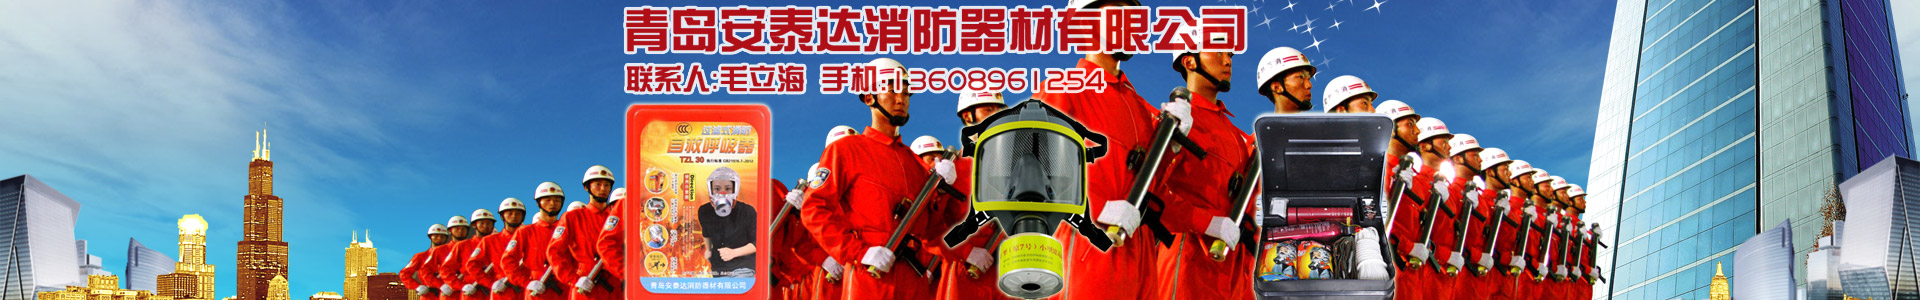 公司簡介-青島安泰達消防器材有限公司-